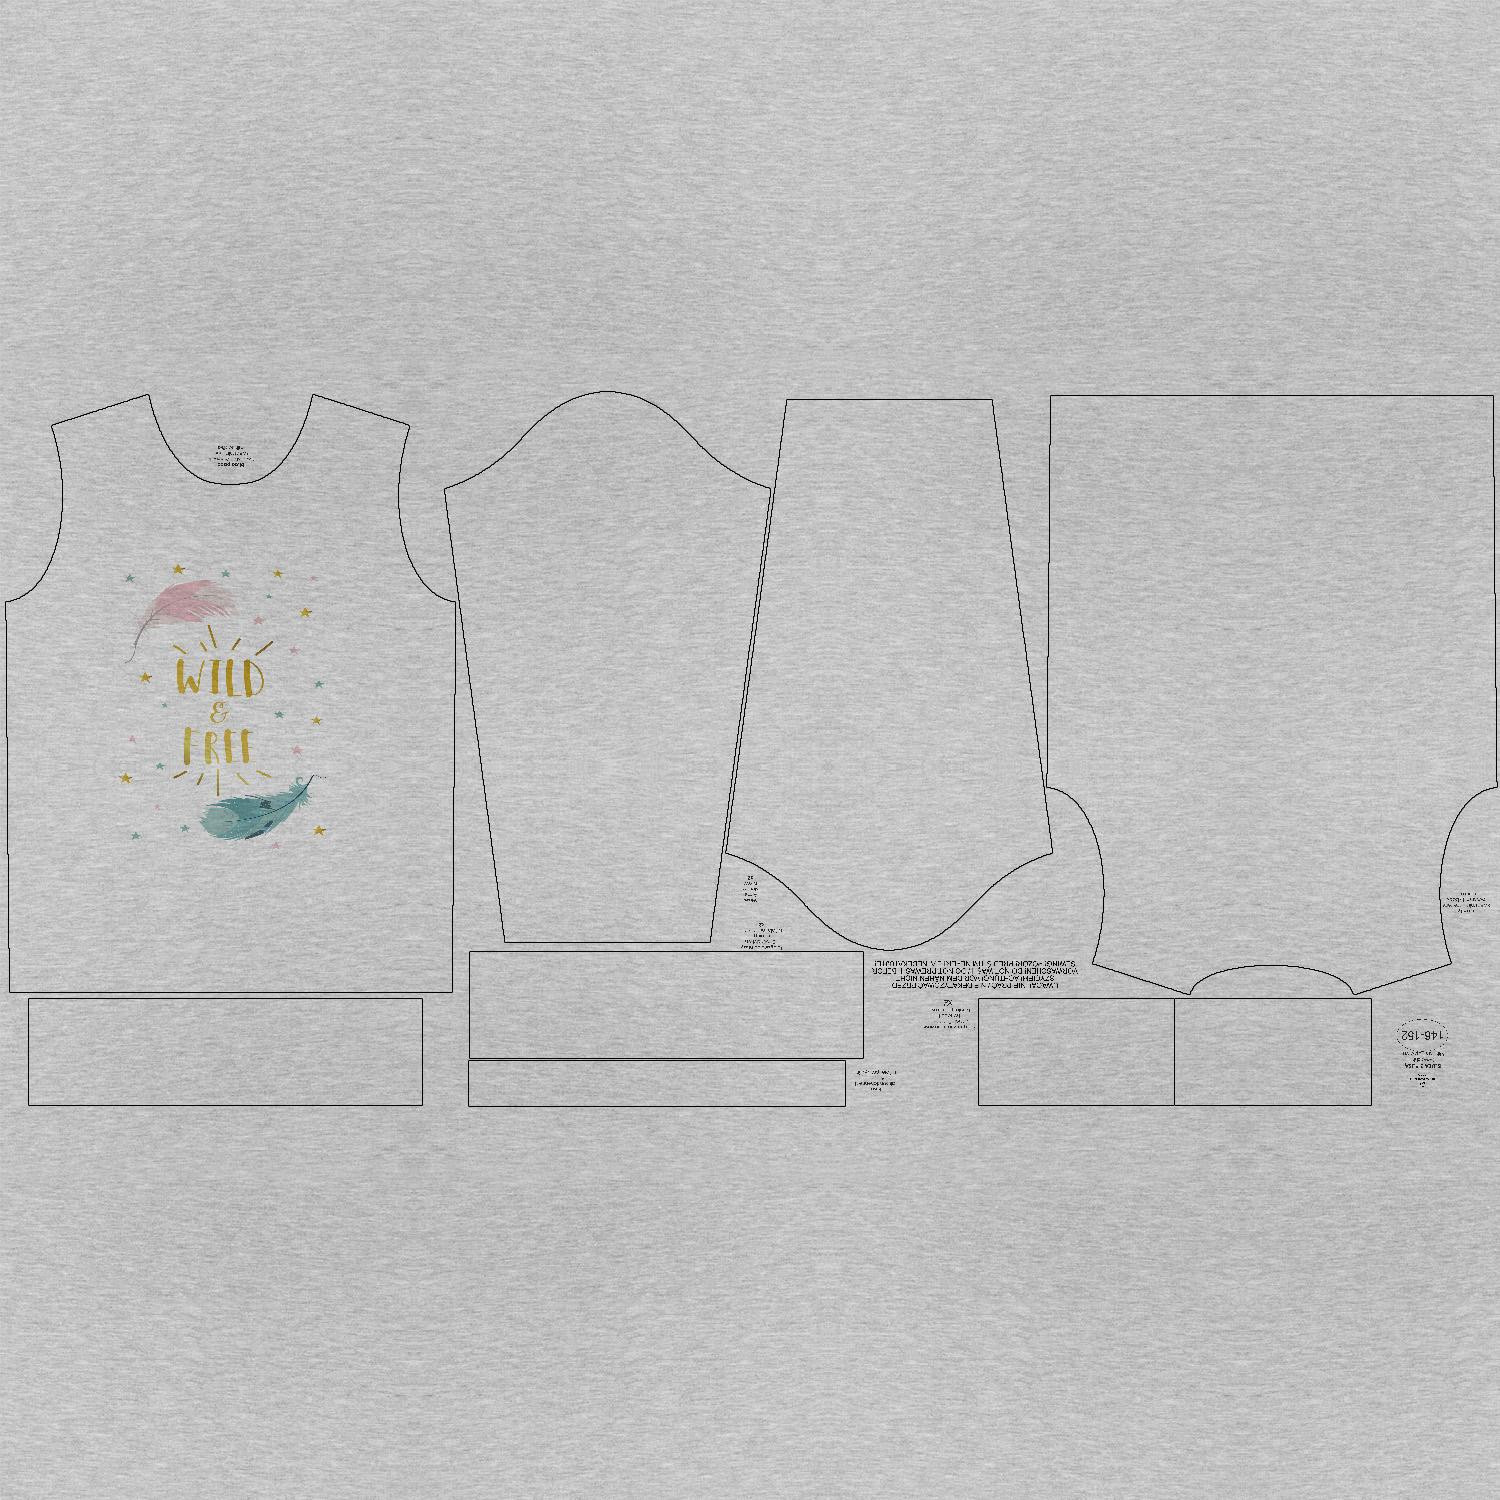 Kinder-Sweatshirts (NOE) - PASTELL-FEDERN (WILD & FREE) / M-01 melange hellgrau - Sommersweat